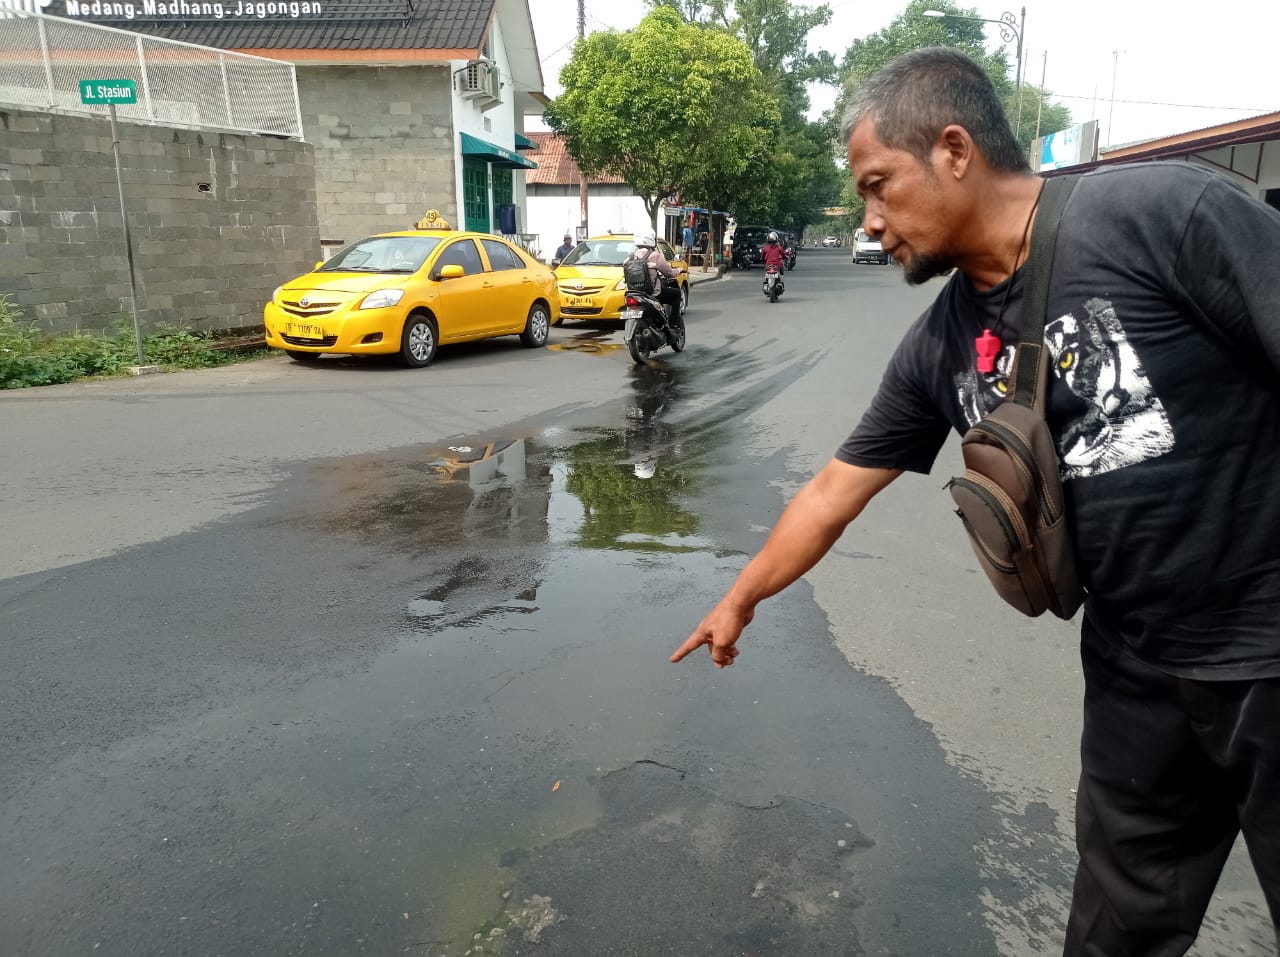 Genangan Air Berbulan-bulan di Jalan Stasiun Purwokerto Akibatkan 3 Pengendara Motor Terjatuh